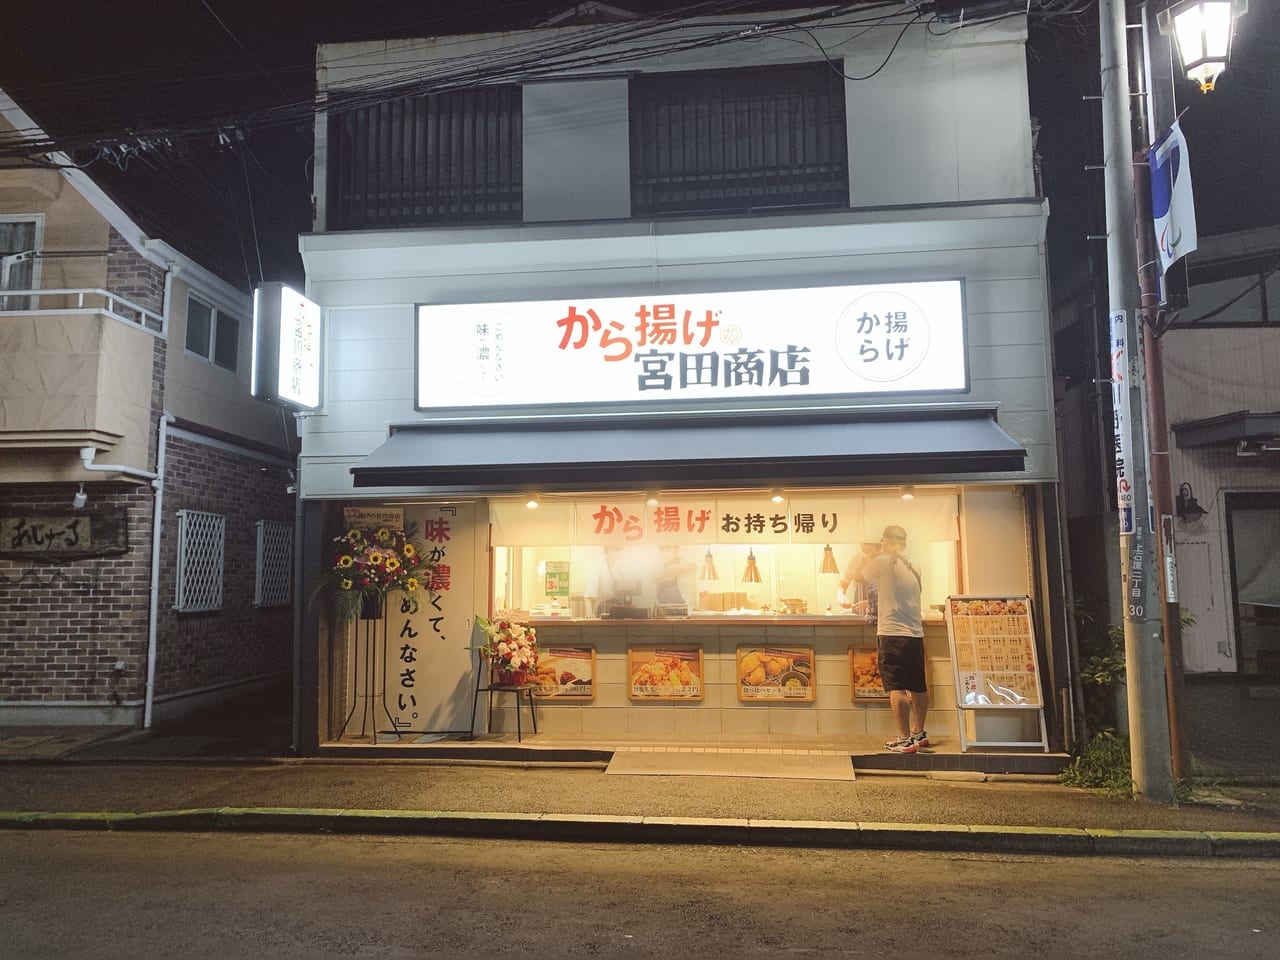 から揚げの宮田商店 西調布店がオープンしました